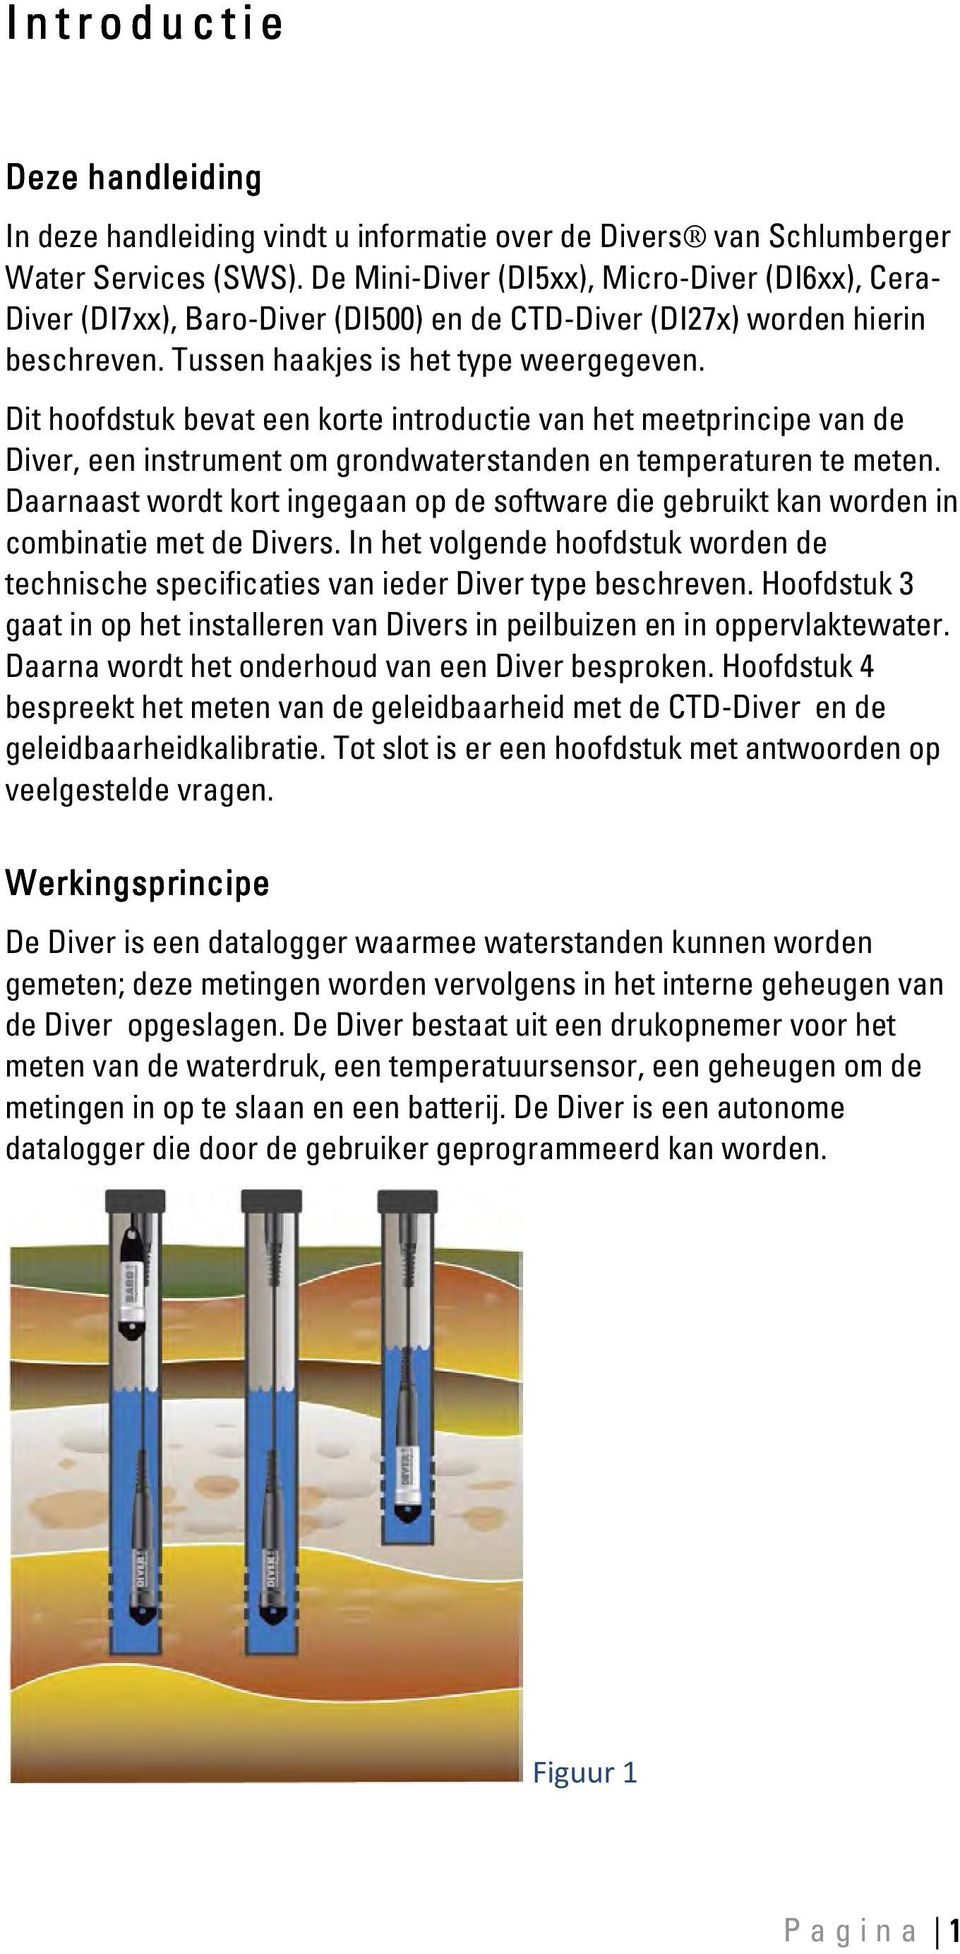 Dit hoofdstuk bevat een korte introductie van het meetprincipe van de Diver, een instrument om grondwaterstanden en temperaturen te meten.